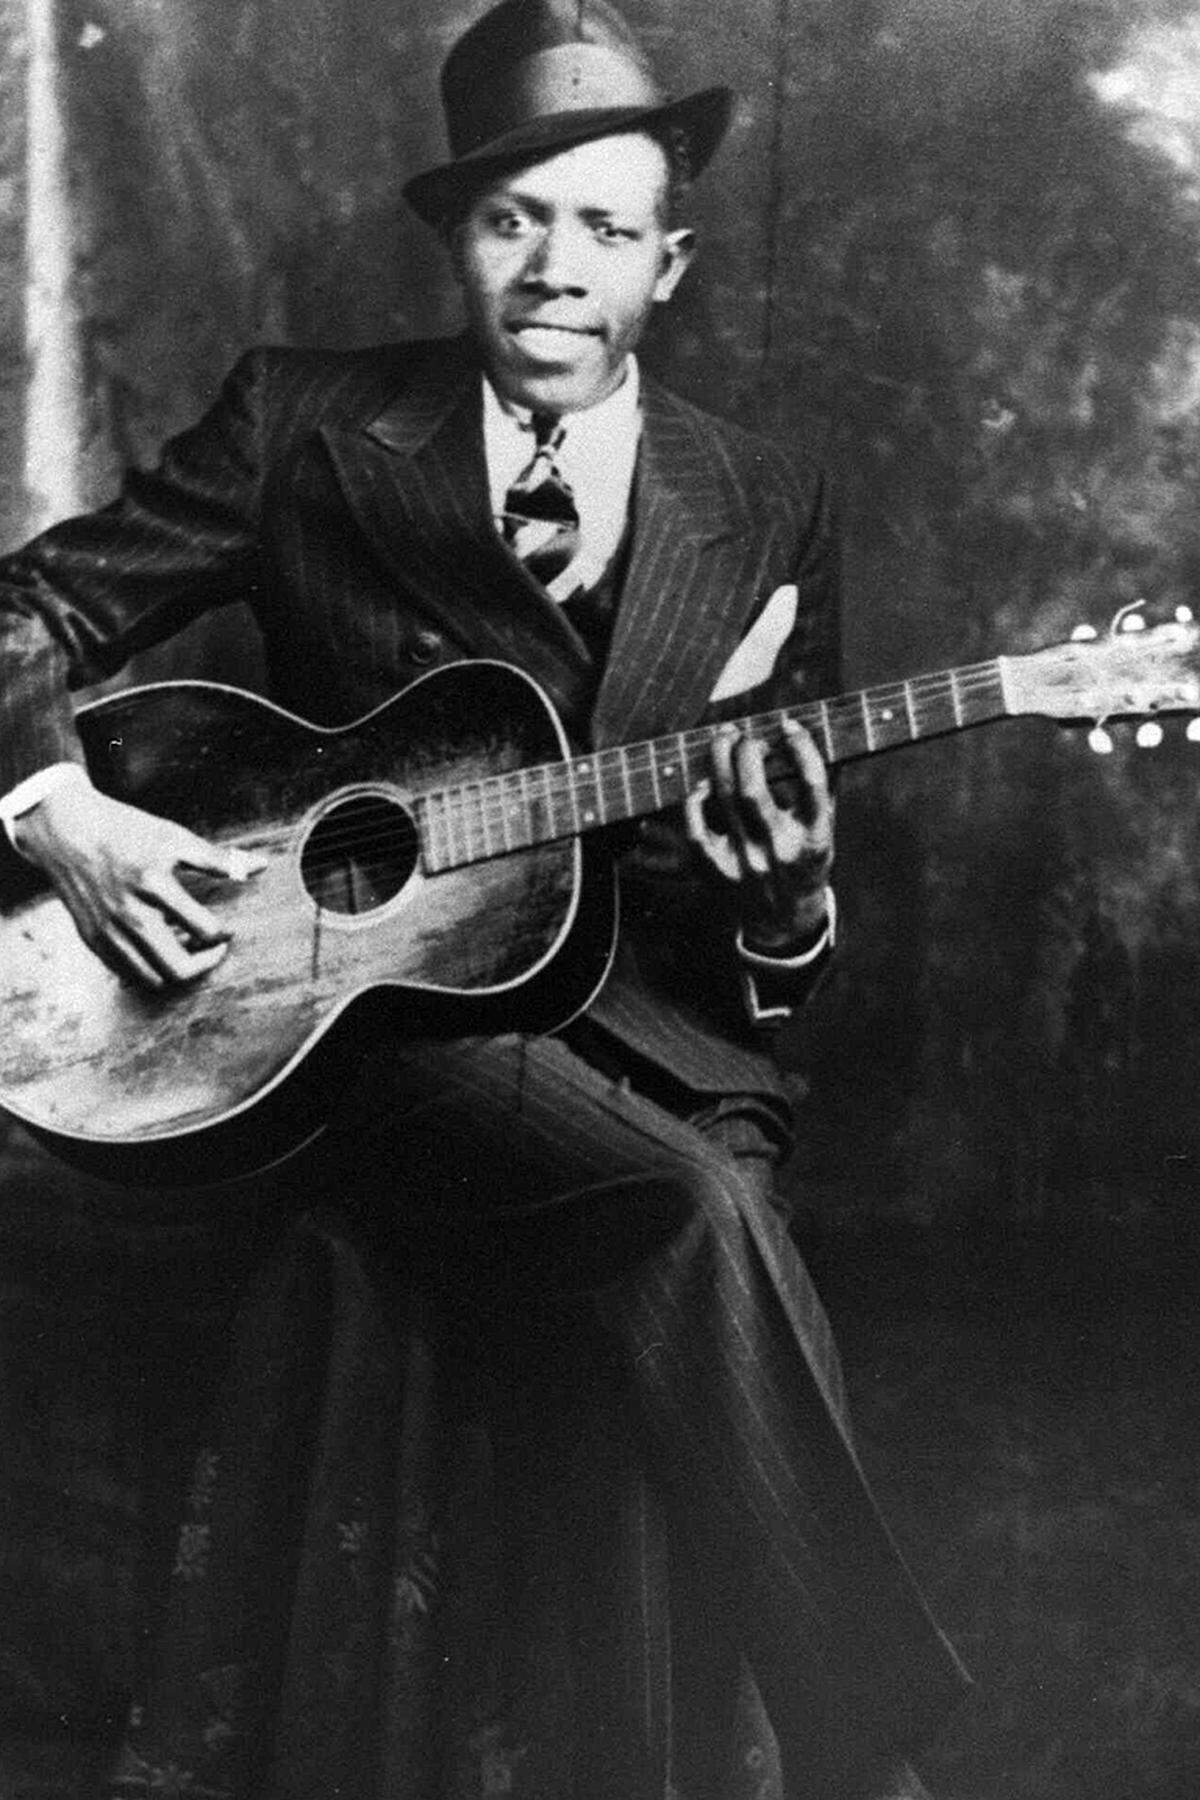 Wie zu Beginn angekündigt, waren es zum größten Teil schwarze Musiker, die als Wegbereiter des Rock and Roll fungierten. Der Delta Blues der 20er Jahre (allen voran Robert Johnson; im Bild) und der Chicago Blues der späten 40er und frühen 50er Jahre (u.a. Muddy Waters' "Rollin Stone") waren der Grundstein dafür.